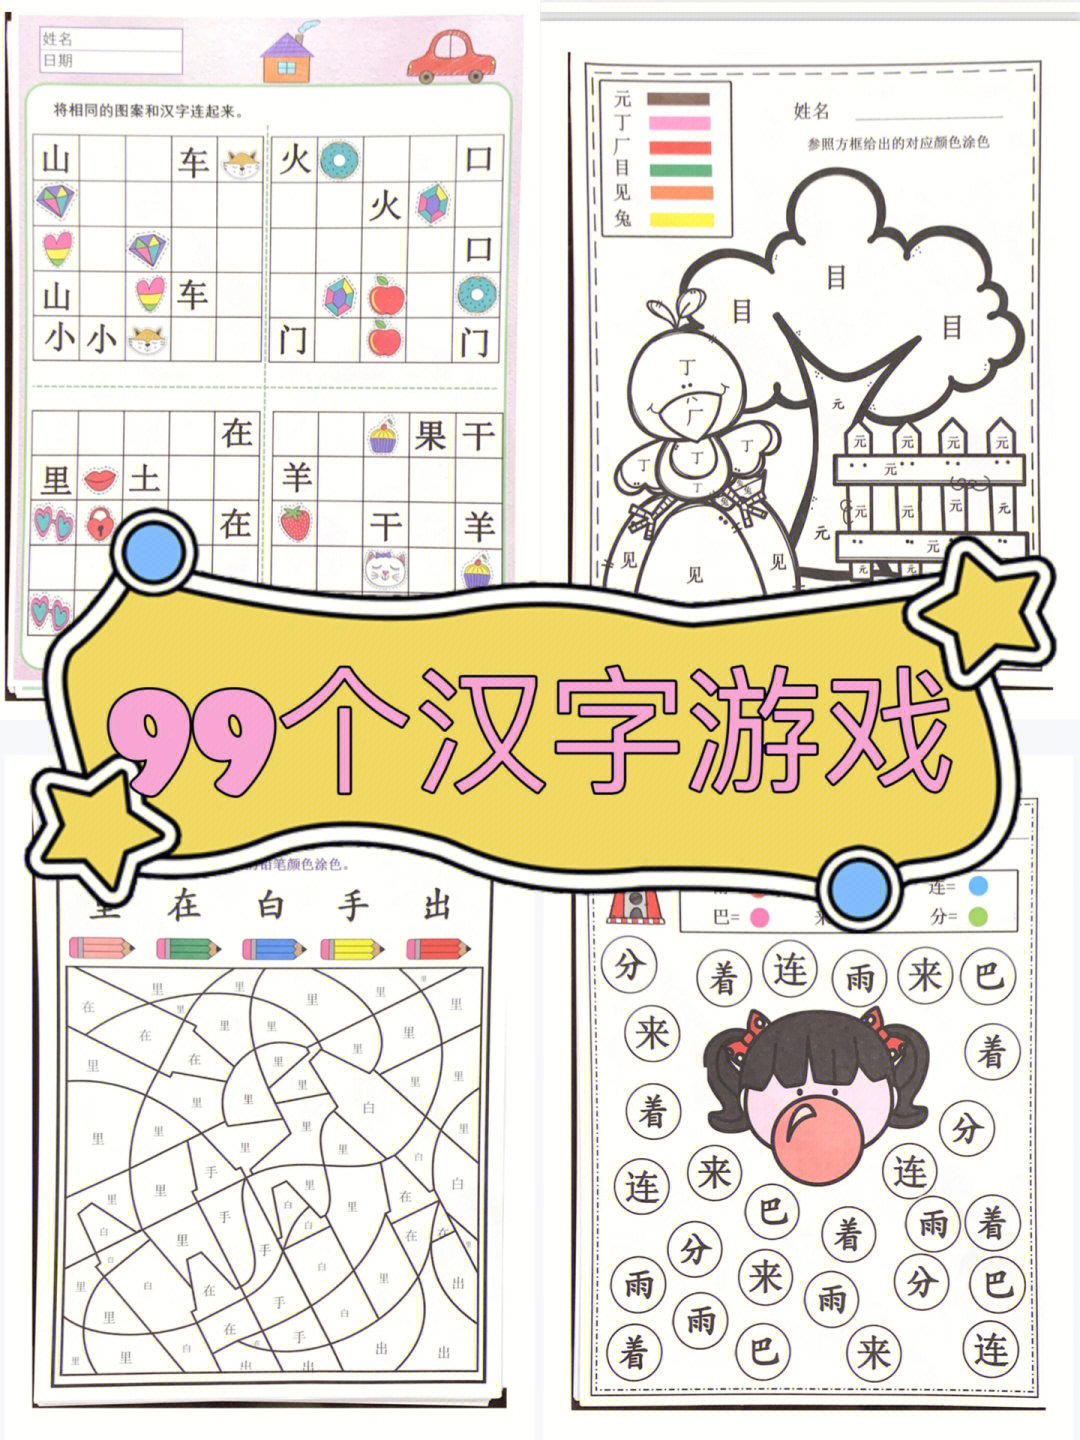 99个汉字小游戏,带娃趣味学汉字